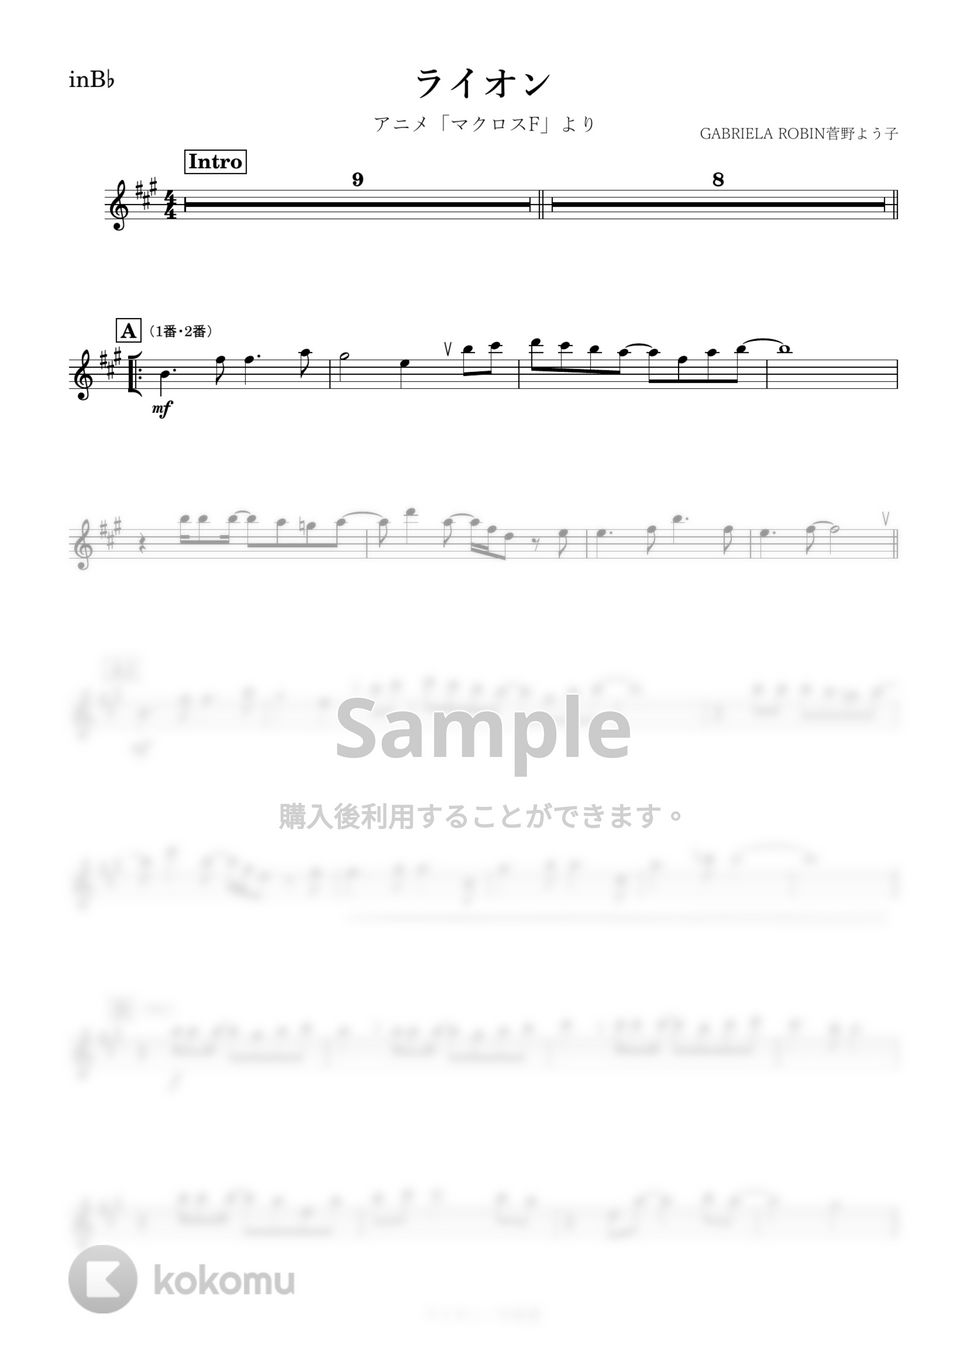 マクロスF - ライオン (B♭) by kanamusic